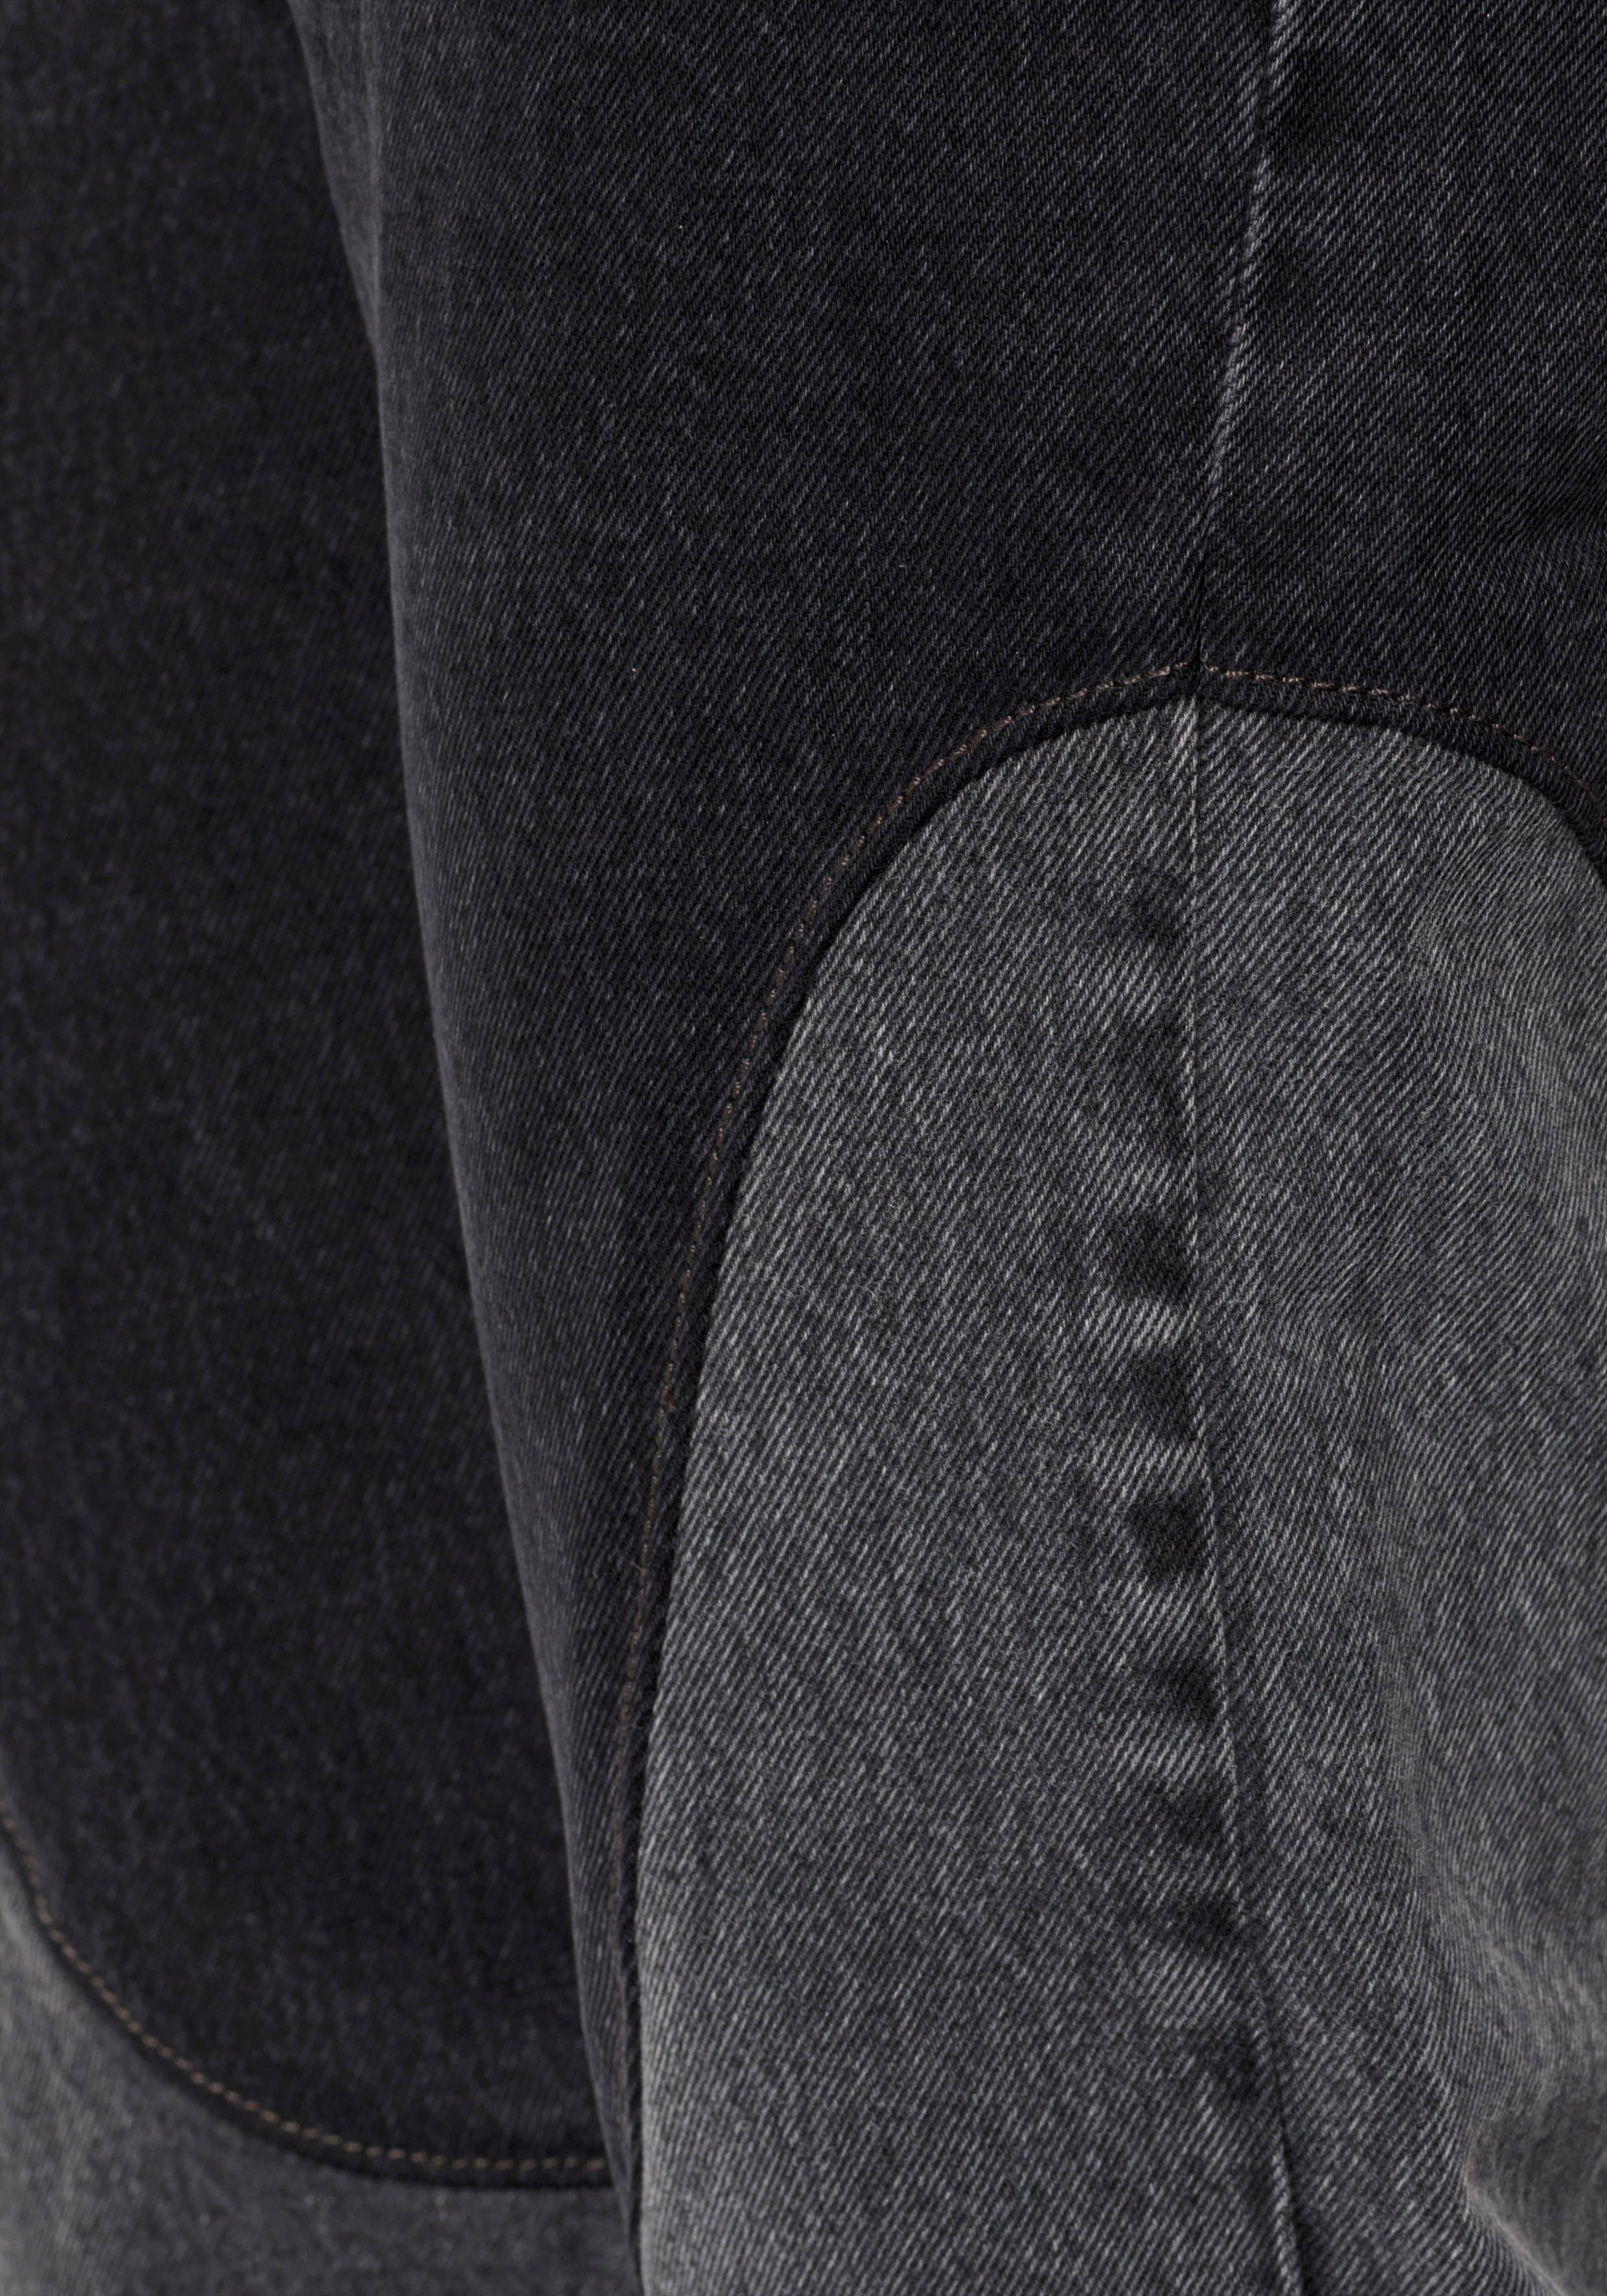 Levi's 5-pocket jeans 501 ORIGINAL CHAPS